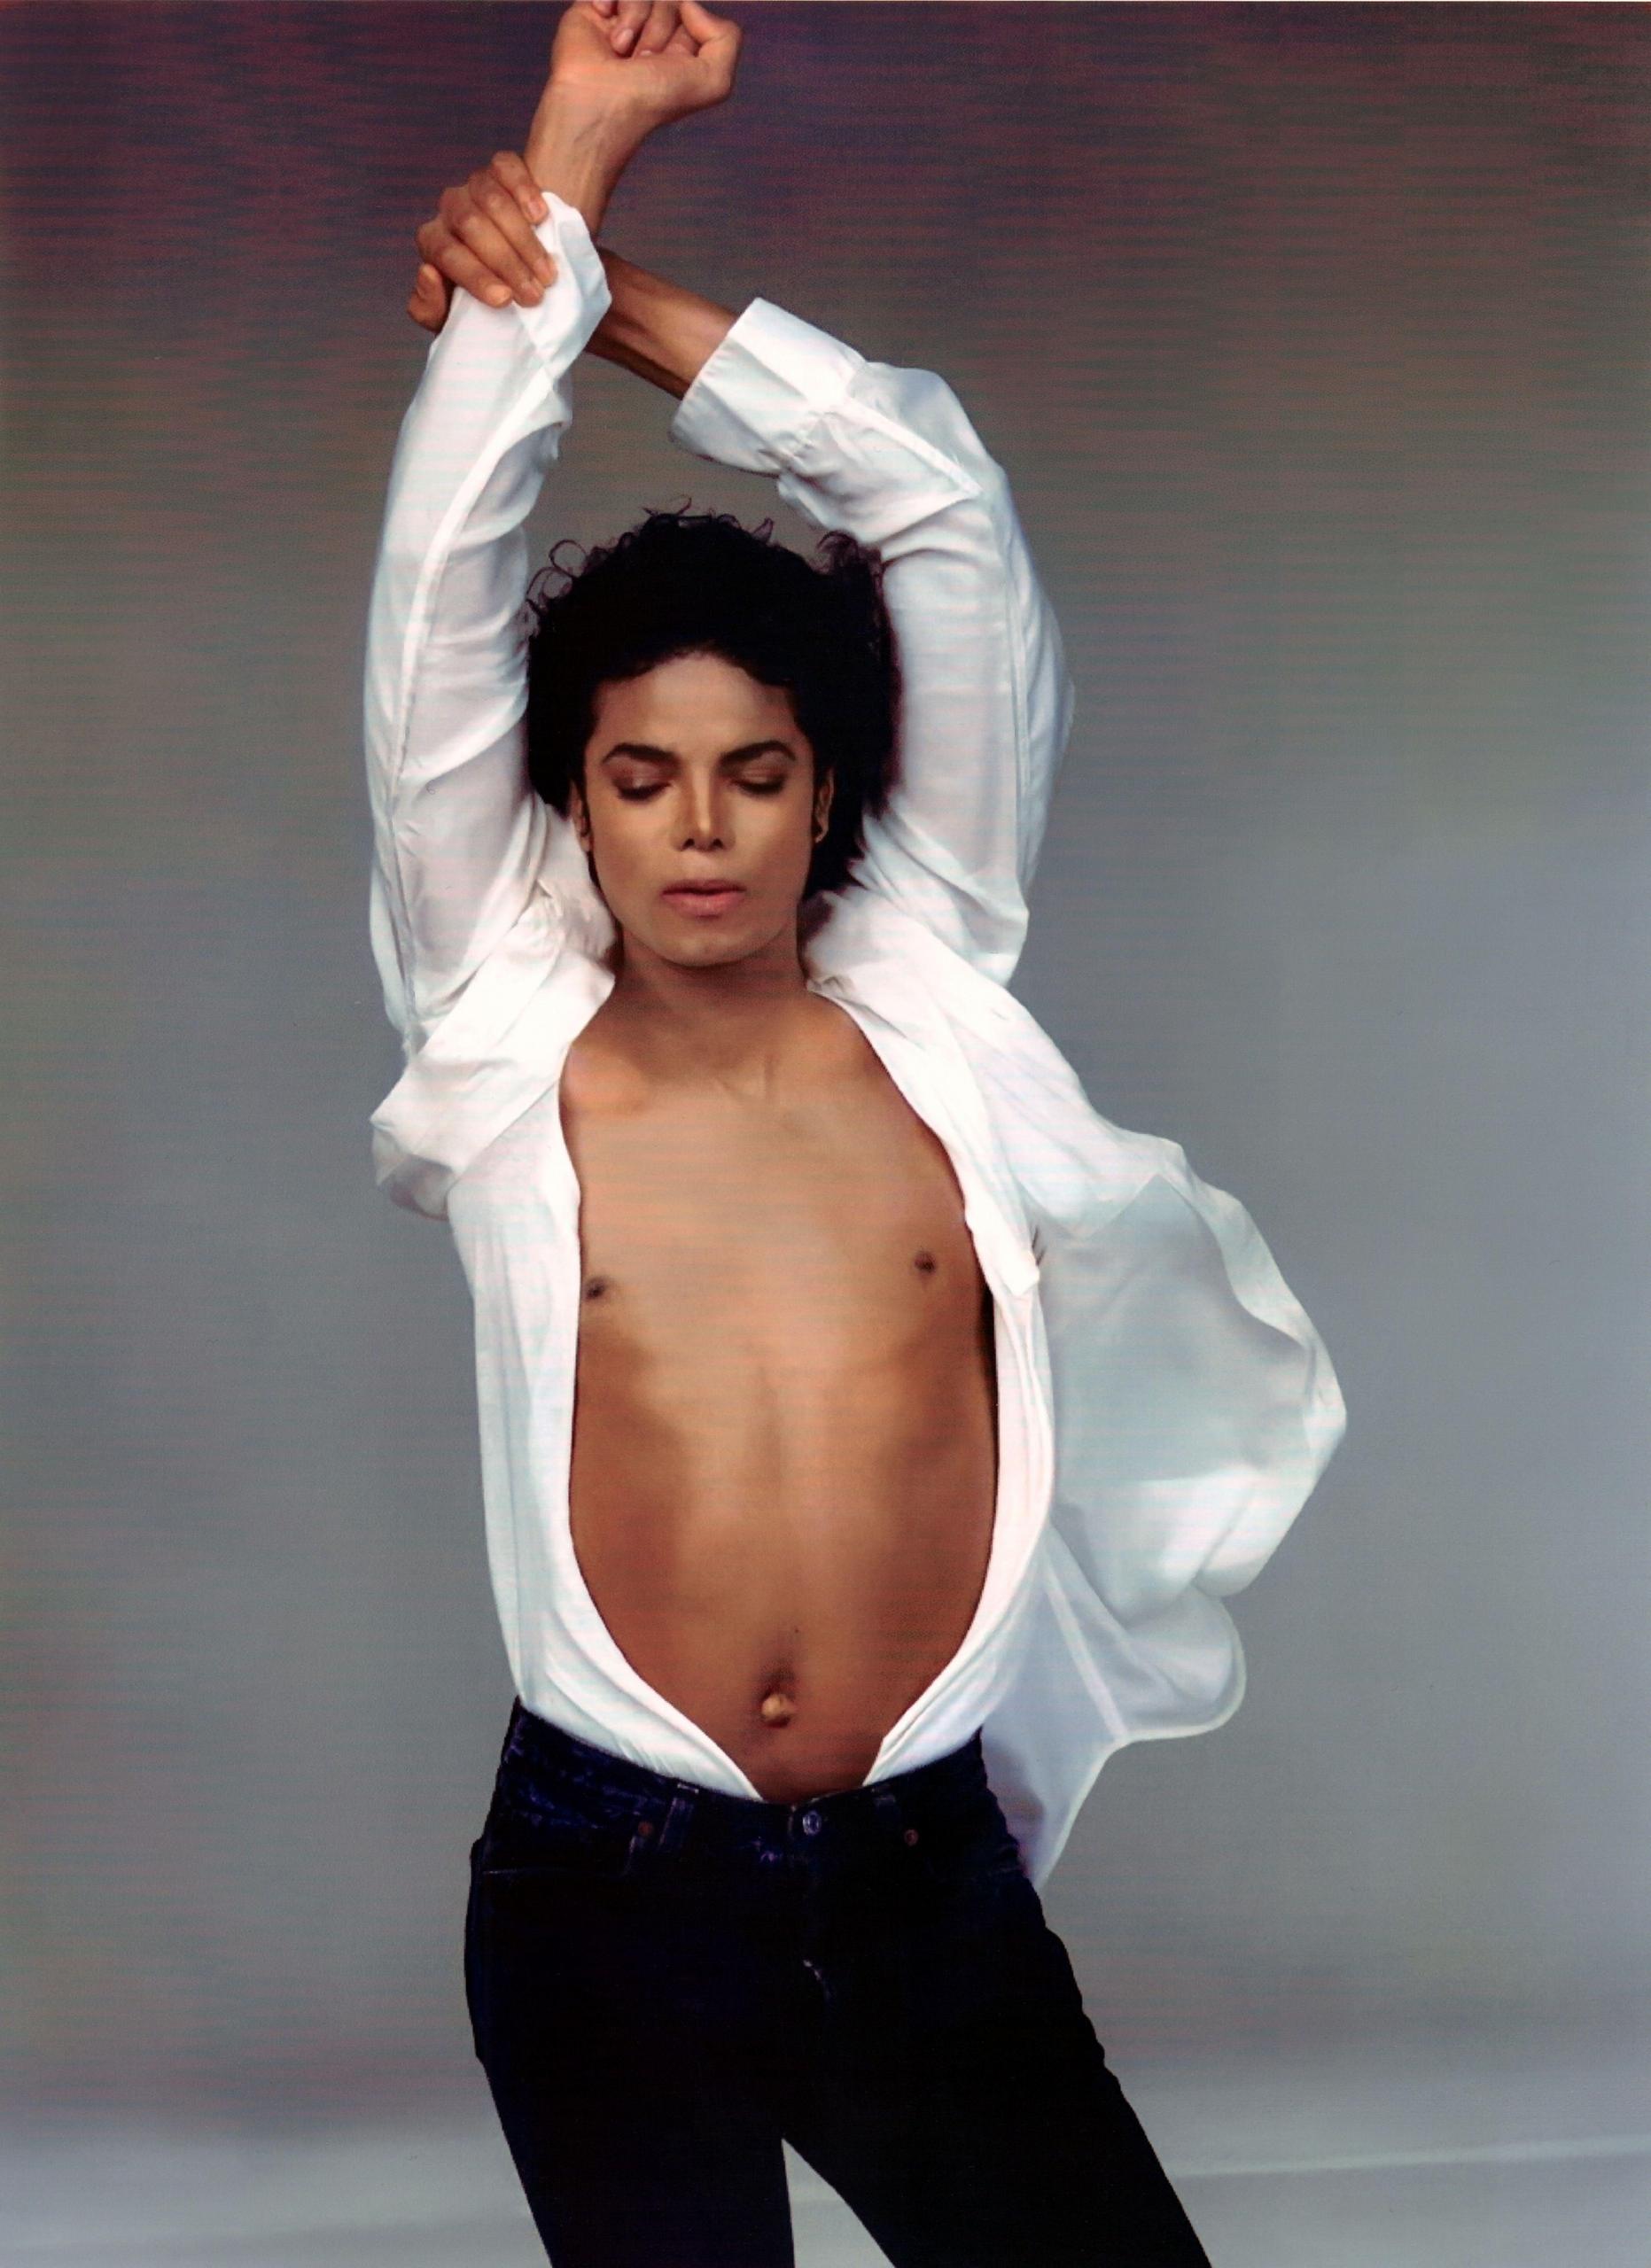 Майкл Джексон Images on Fanpop.